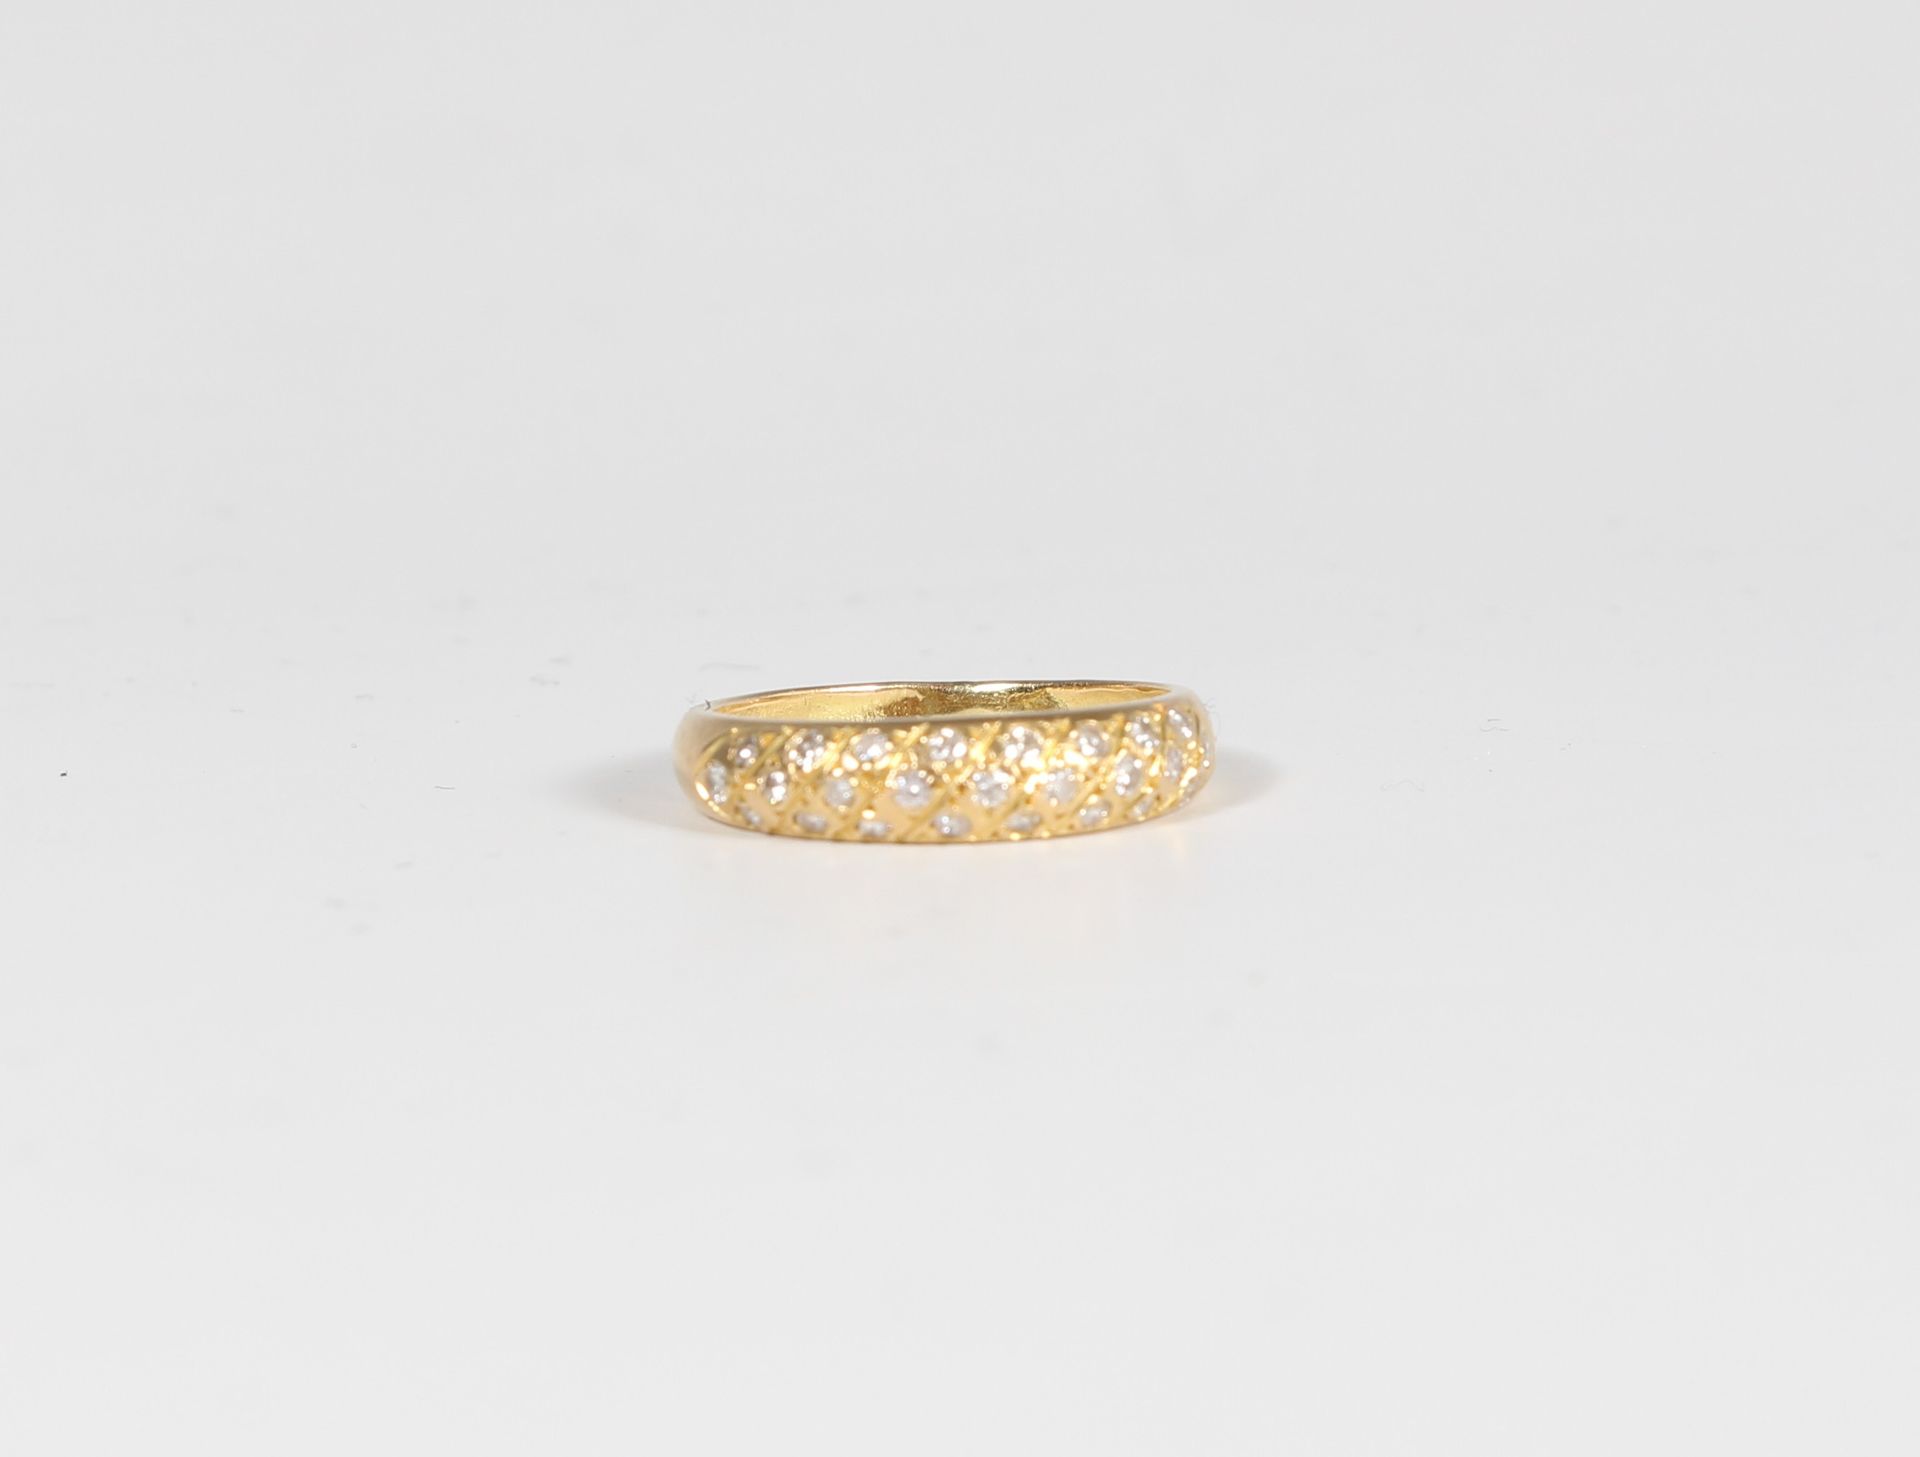 Null Anello in oro giallo 750/1000è con diamanti incastonati. Peso: 2,53 g

TDD:&hellip;